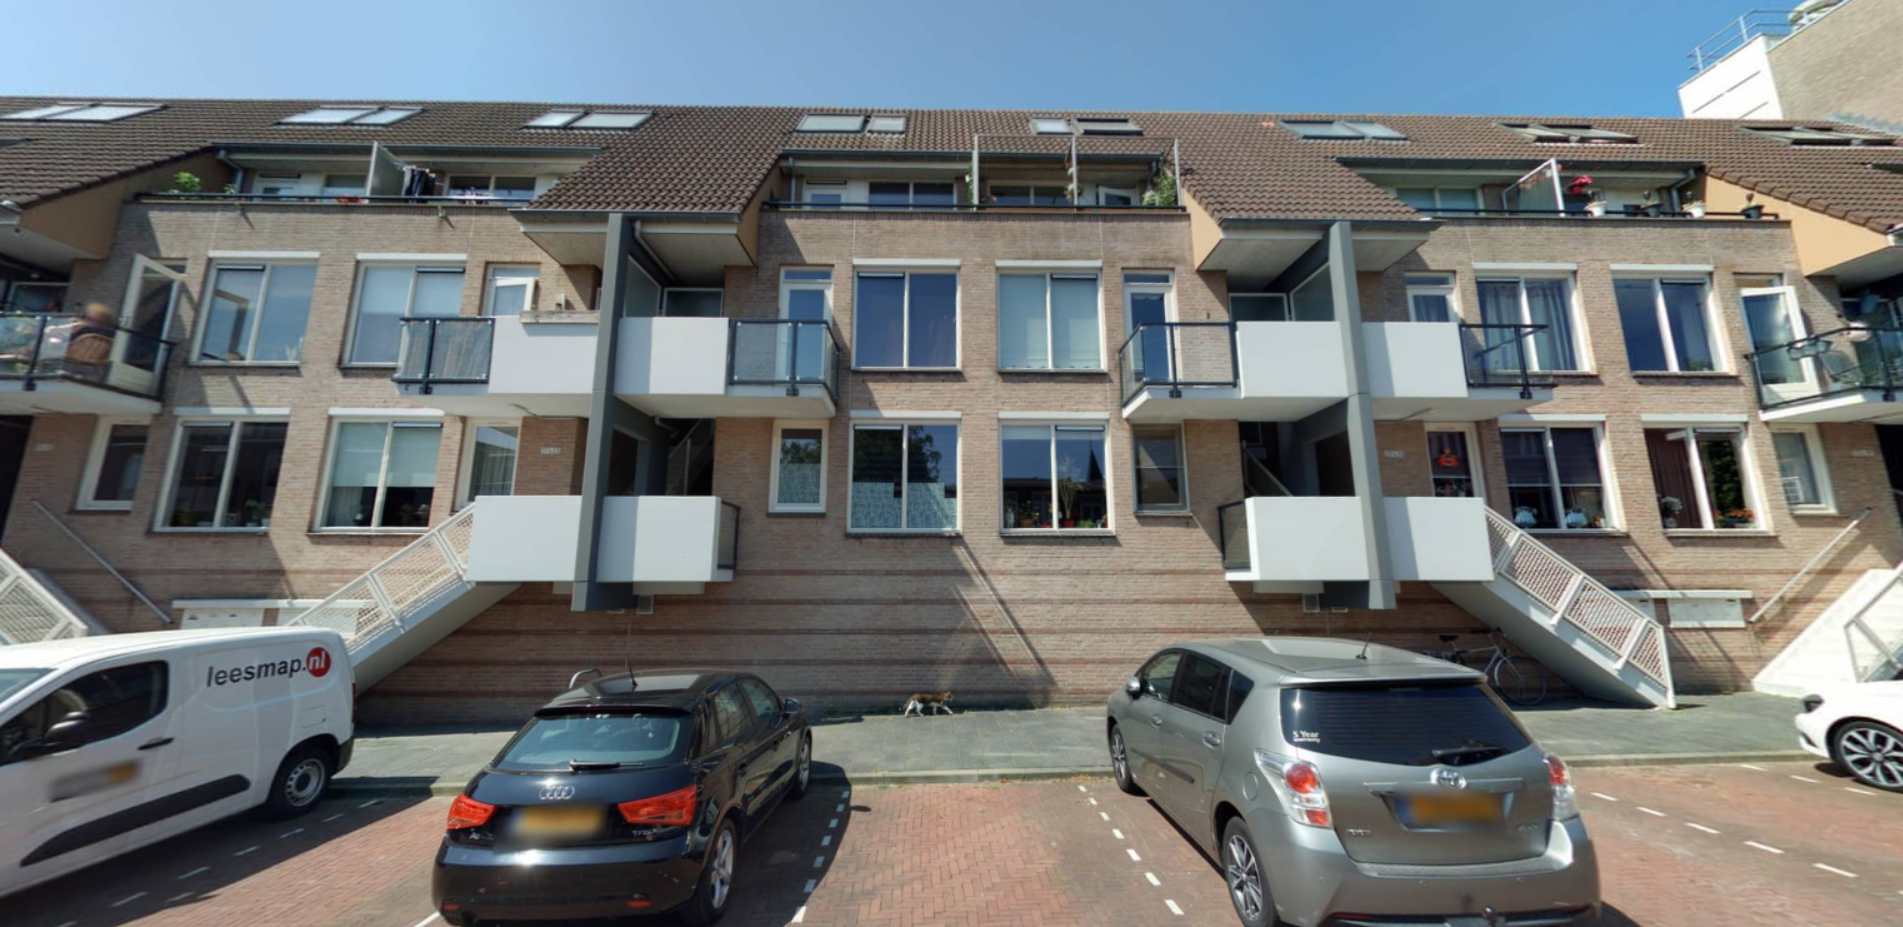 Boxhornstraat 27, 4611 ED Bergen op Zoom, Nederland